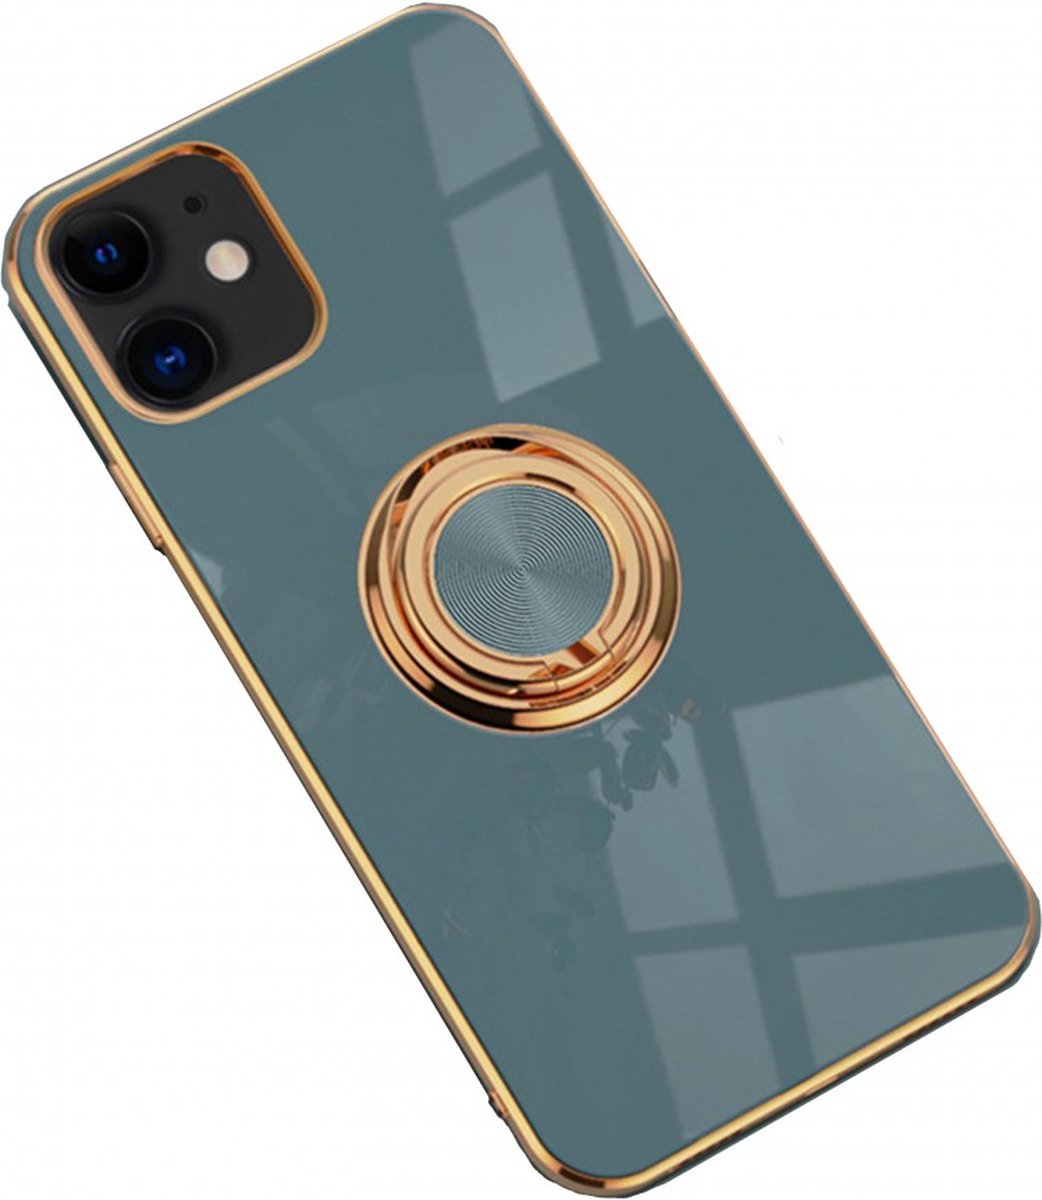 iPhone 12/12 Pro hoesje met ring - Kickstand - iPhone - Goud detail - Handig - Hoesje met ring - 5 verschillende kleuren - zalm roze - Grijs/blauw - Donker groen - Zwart - Paars